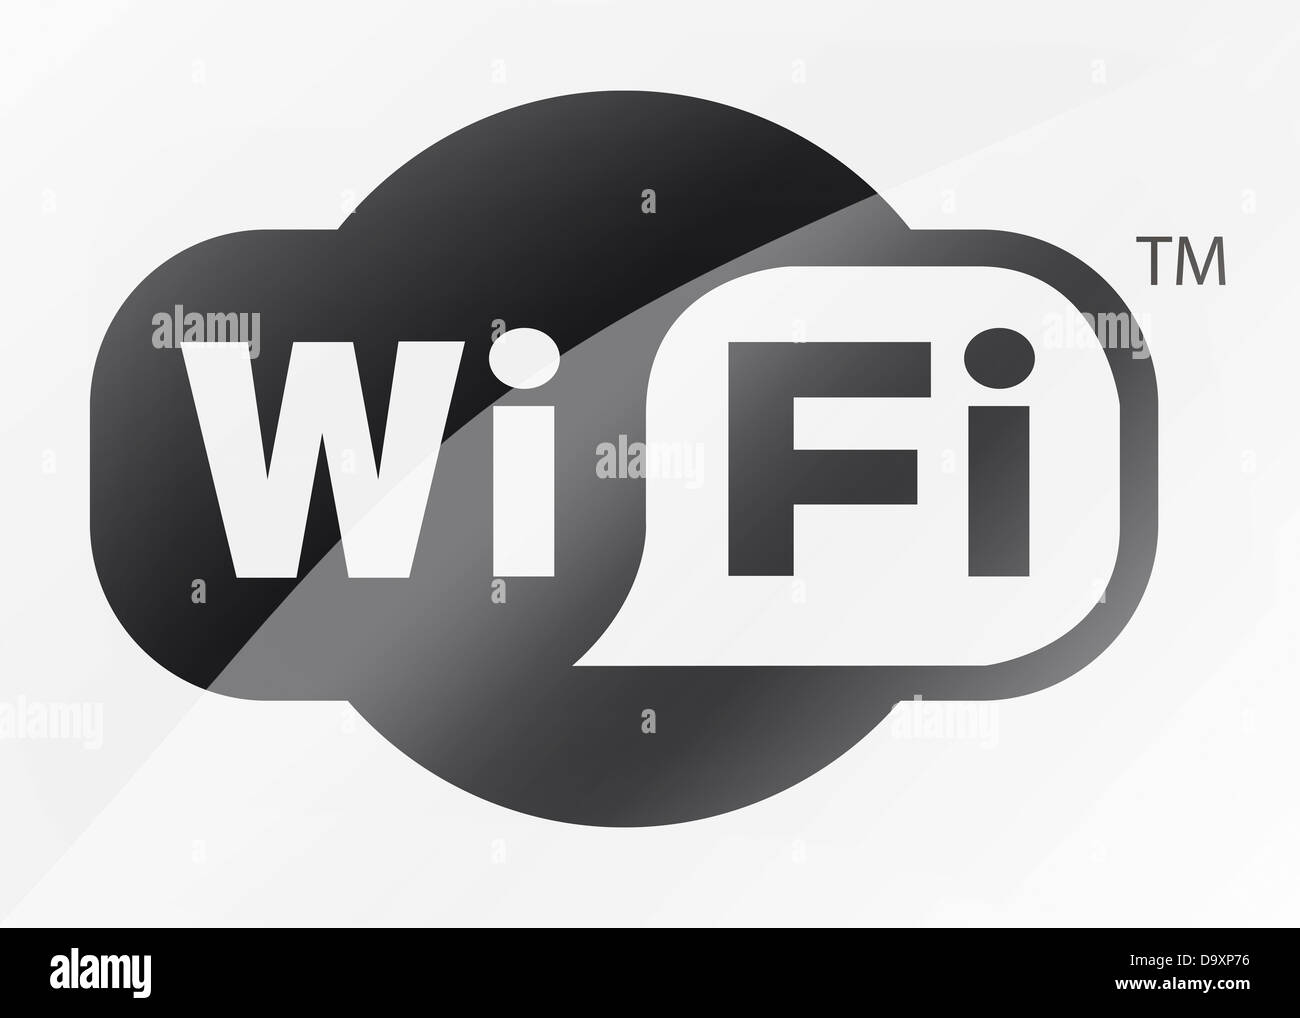 WiFi / Wi Fi logo symbol icon flag Stock Photo